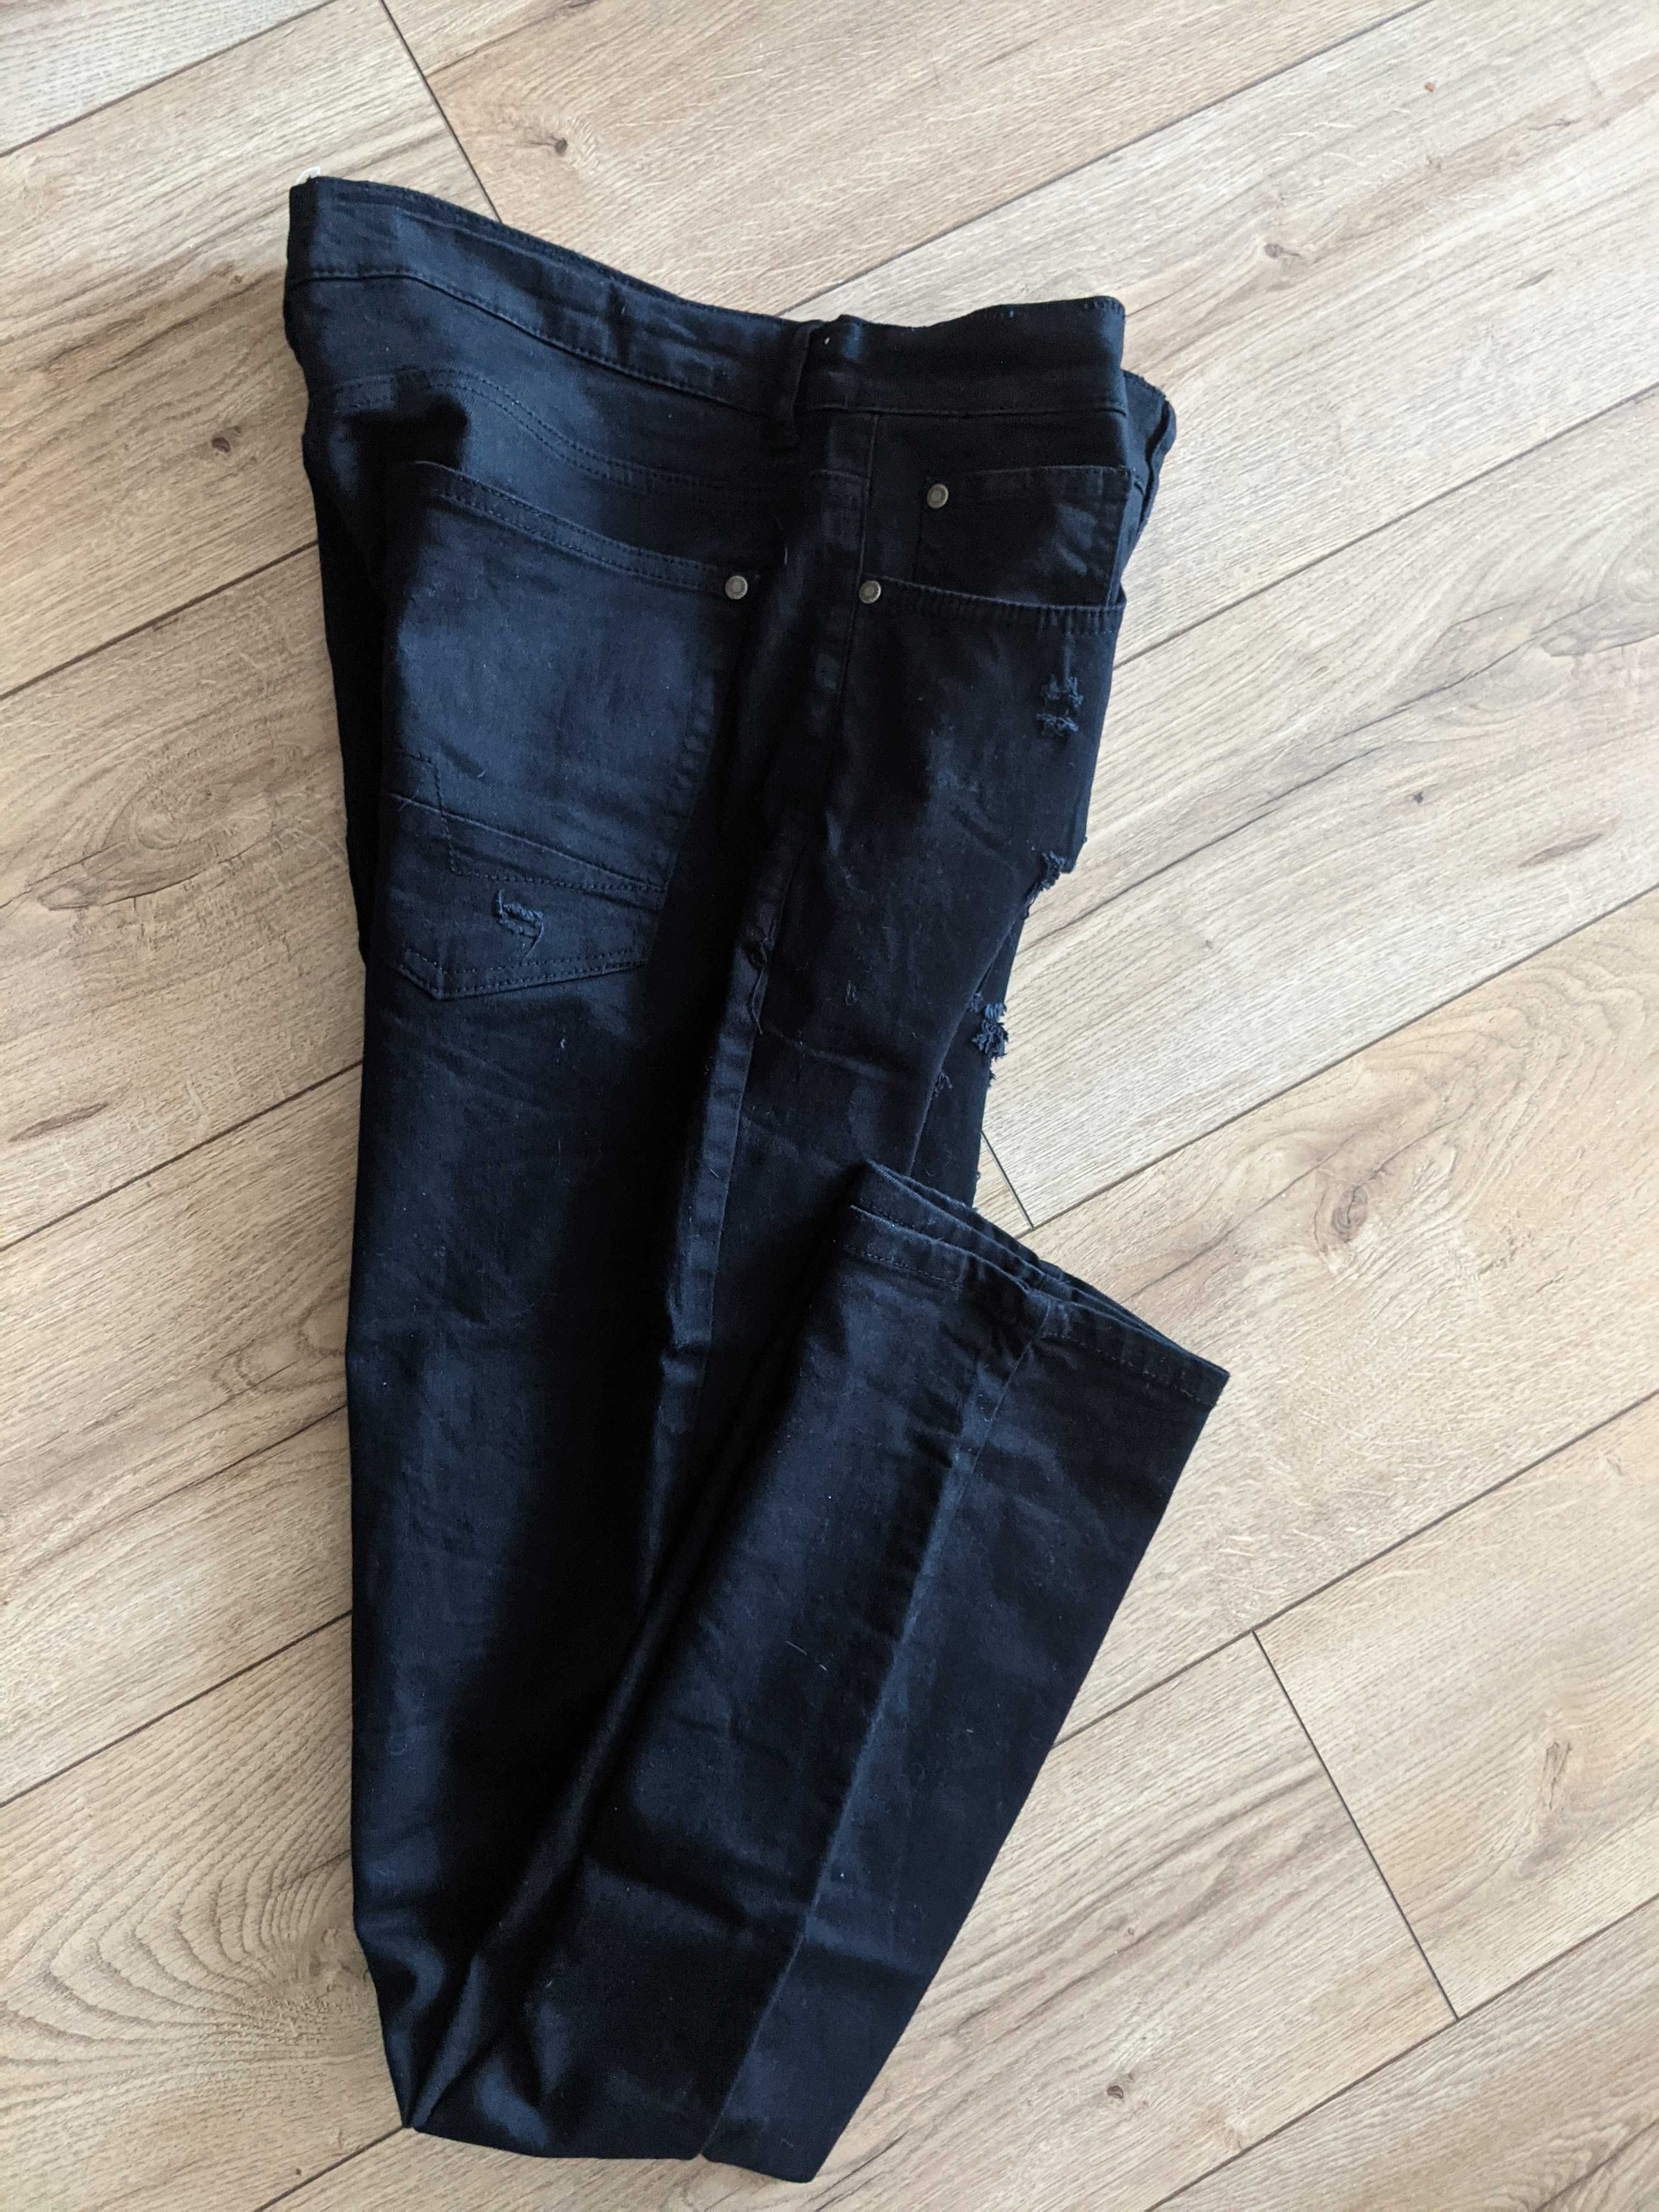 Spodnie męskie 36/34 elastyczne dziury miękki jeans jNowe pas96